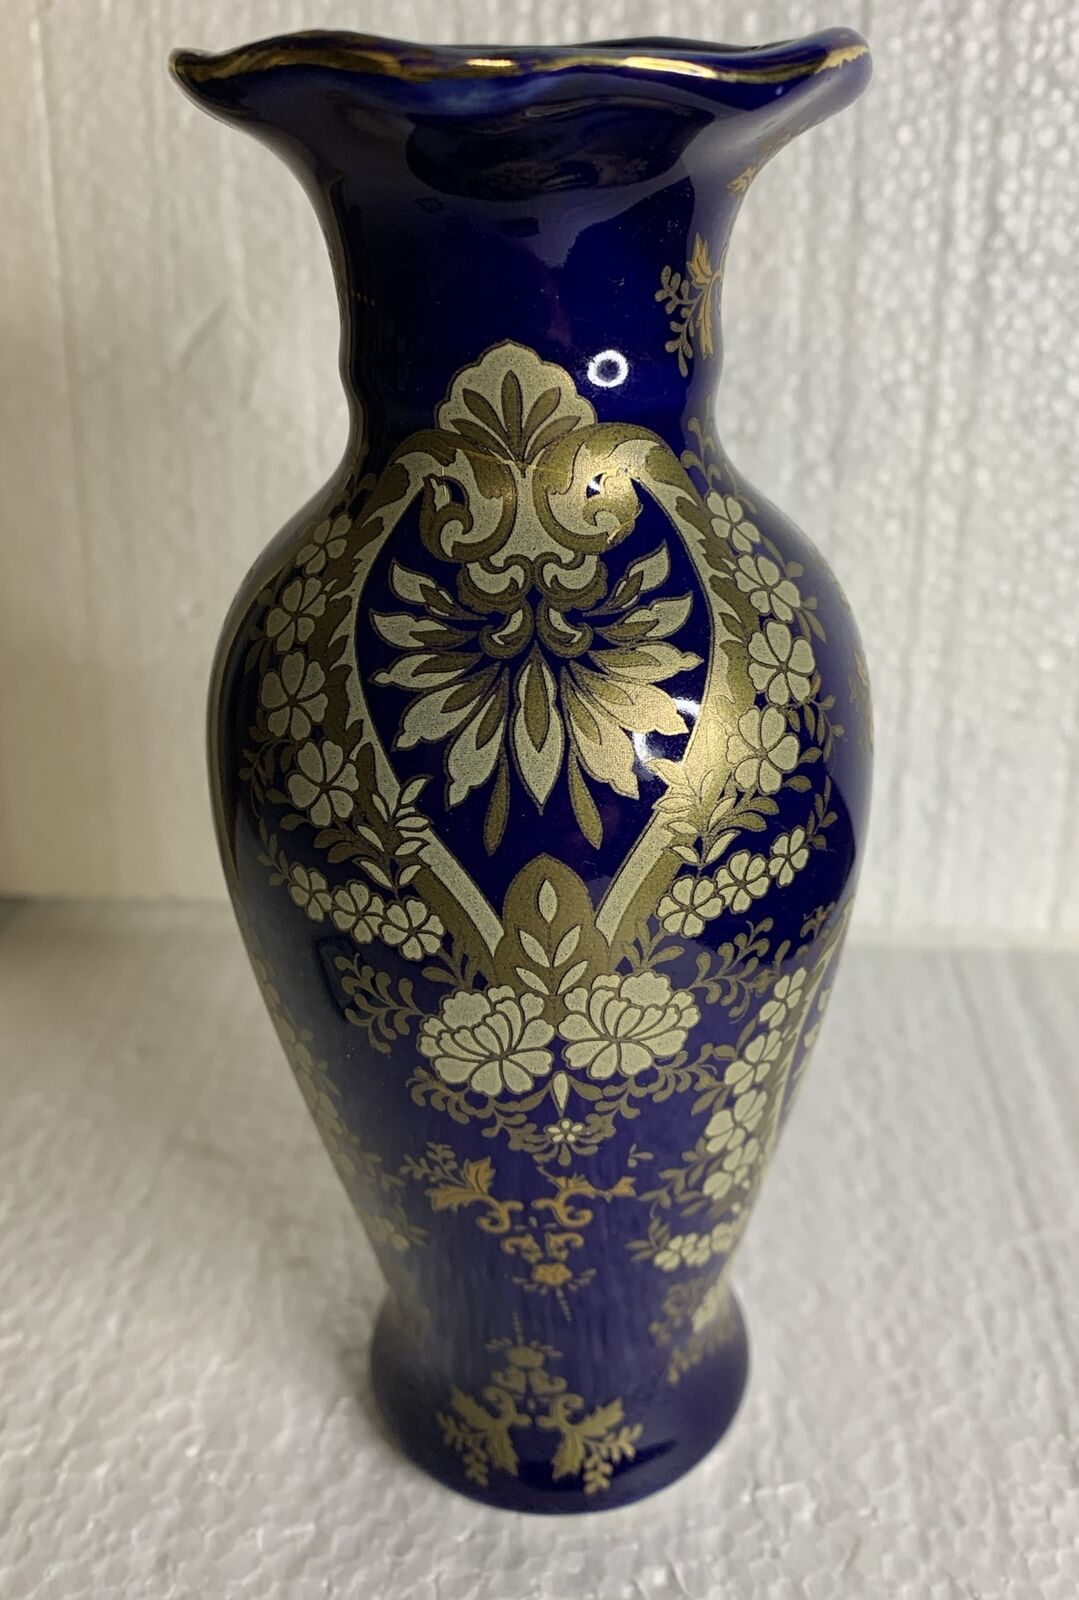 Cobalt Blue/Gold Vase VTG Asian Floral Ceramic Ruffle Top